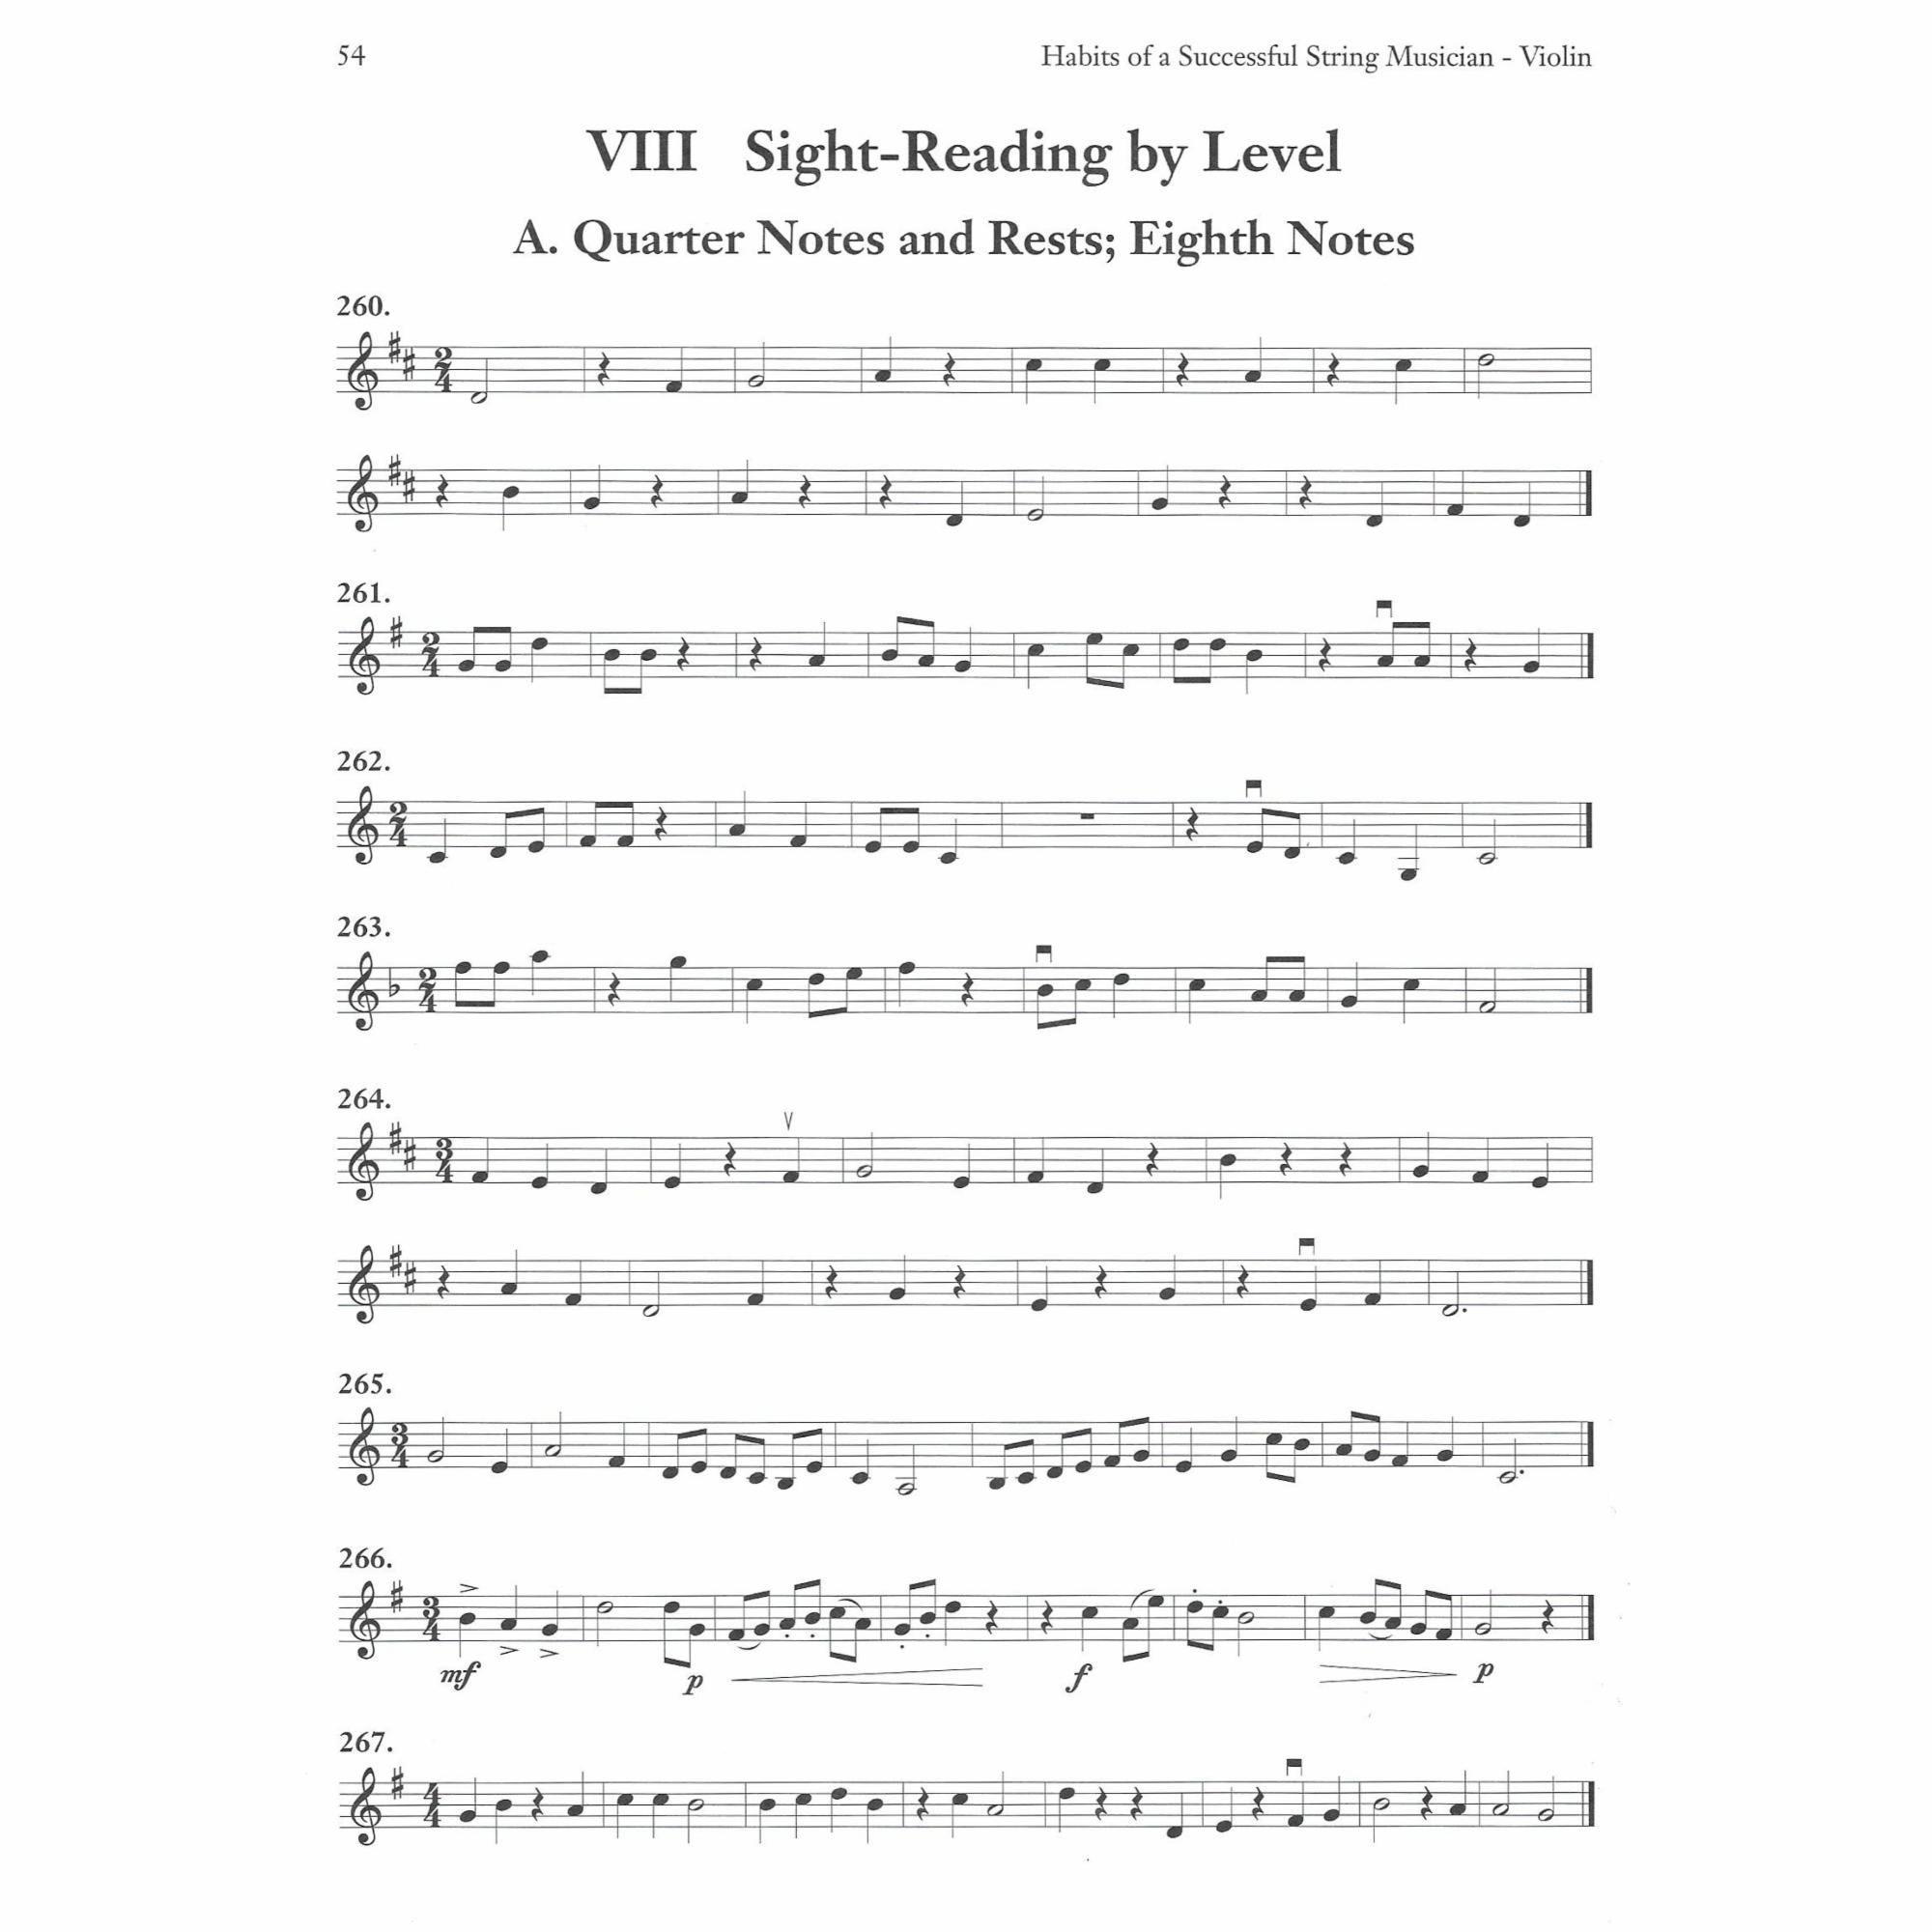 Sample: Violin (Pg. 54)